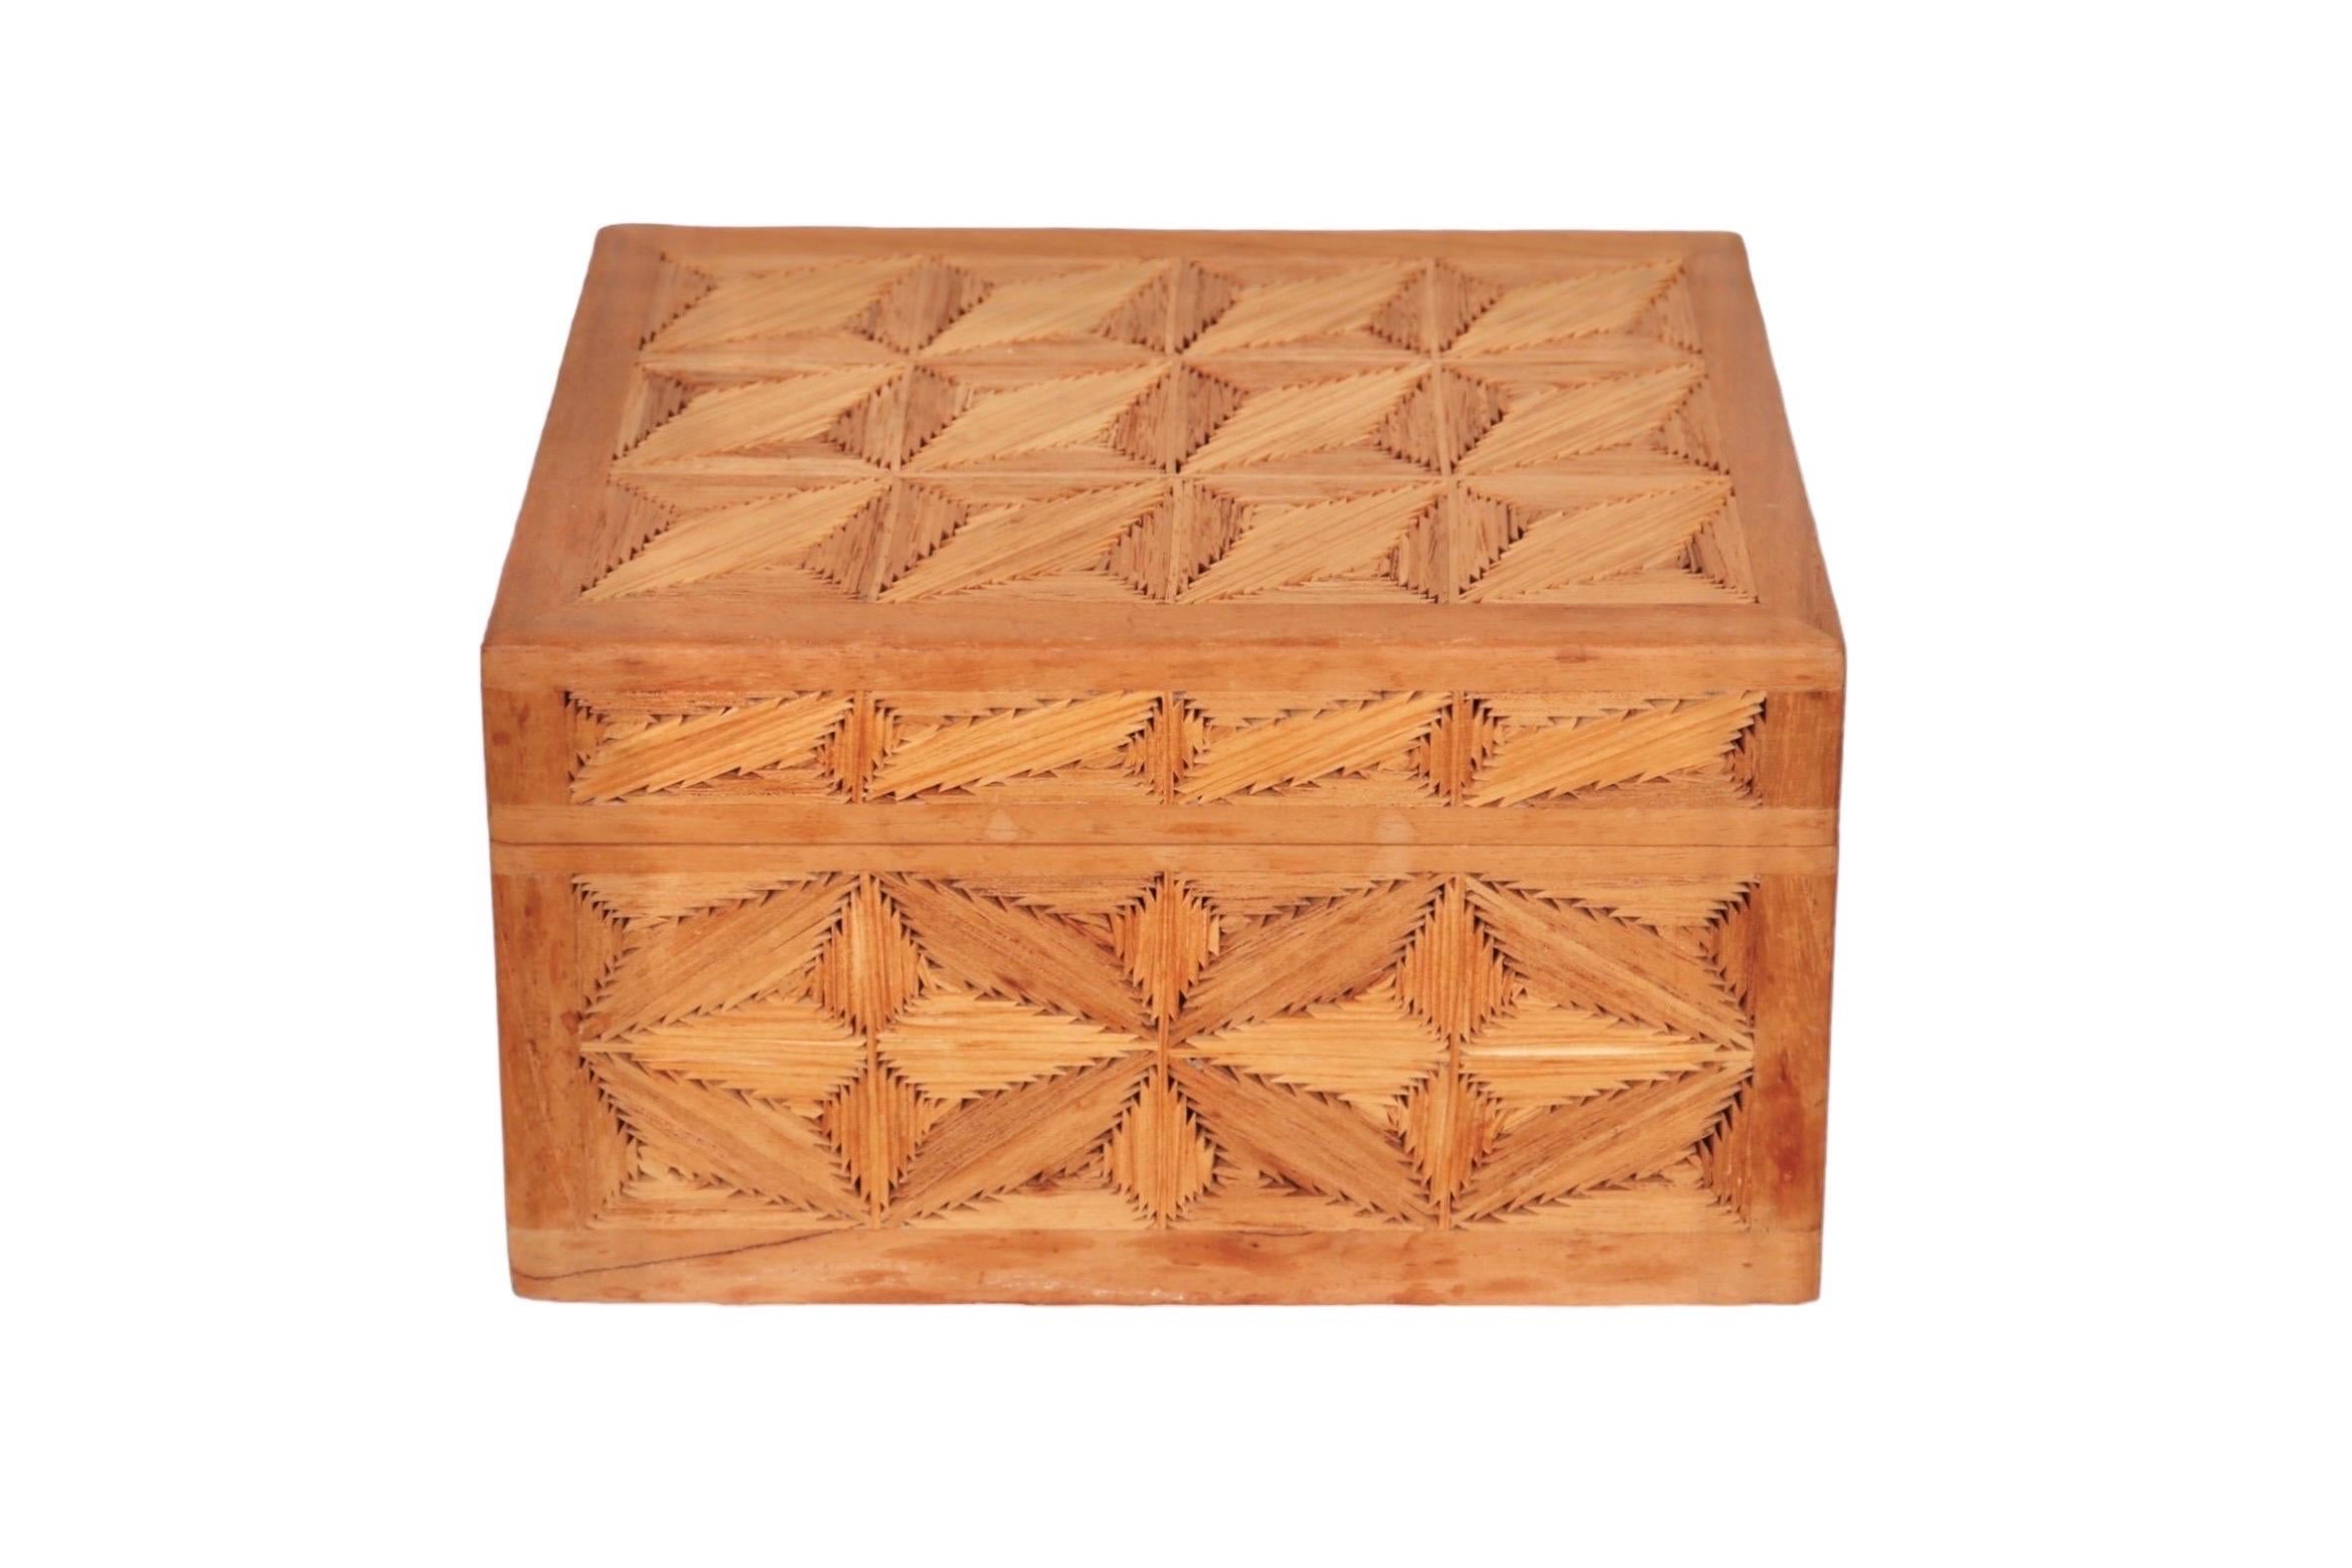 Eine handgefertigte Schmuckschatulle aus Holz. Auf jeder Seite sind gegenläufige Holzrauten aus abgeschrägten Holzspänen eingelegt, die ein einfaches geometrisches Muster ergeben. Der Deckel lässt sich mit zwei Scharnieren öffnen. 